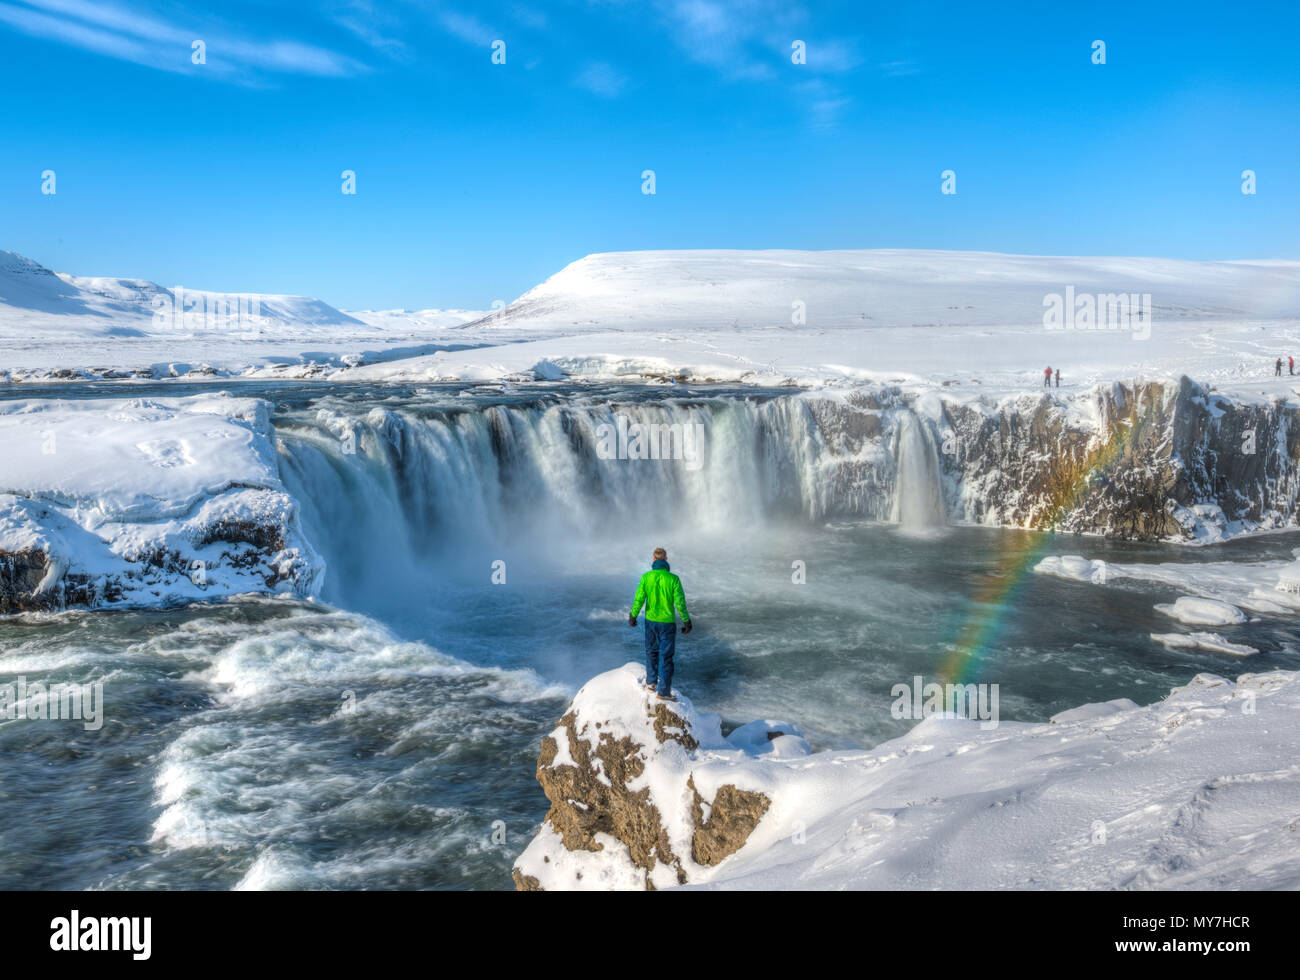 Junge Mann, der auf einem Felsen, Wasserfall mit Regenbogen, Góðafoss, Godafoss im Winter mit Schnee und Eis, Norðurland djupivogur Stockfoto